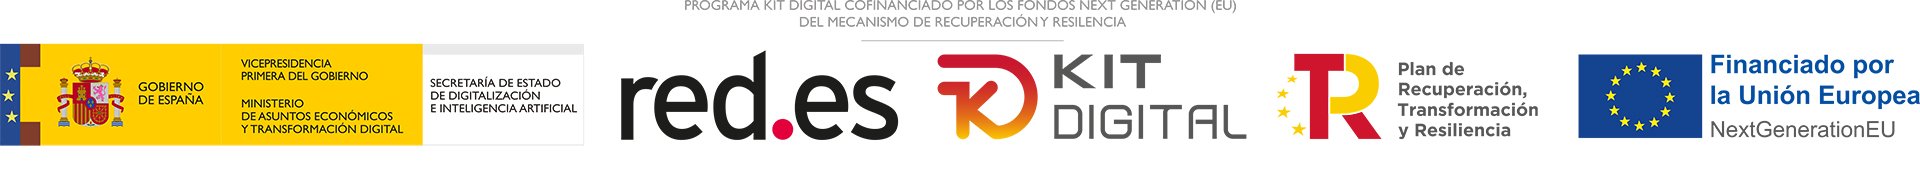 logos-programa-kit-digital-cofinanciado-por-los-fondos-next-generation-eu-del-mecanismo-de-recuperacion-y-resiliencia.jpg